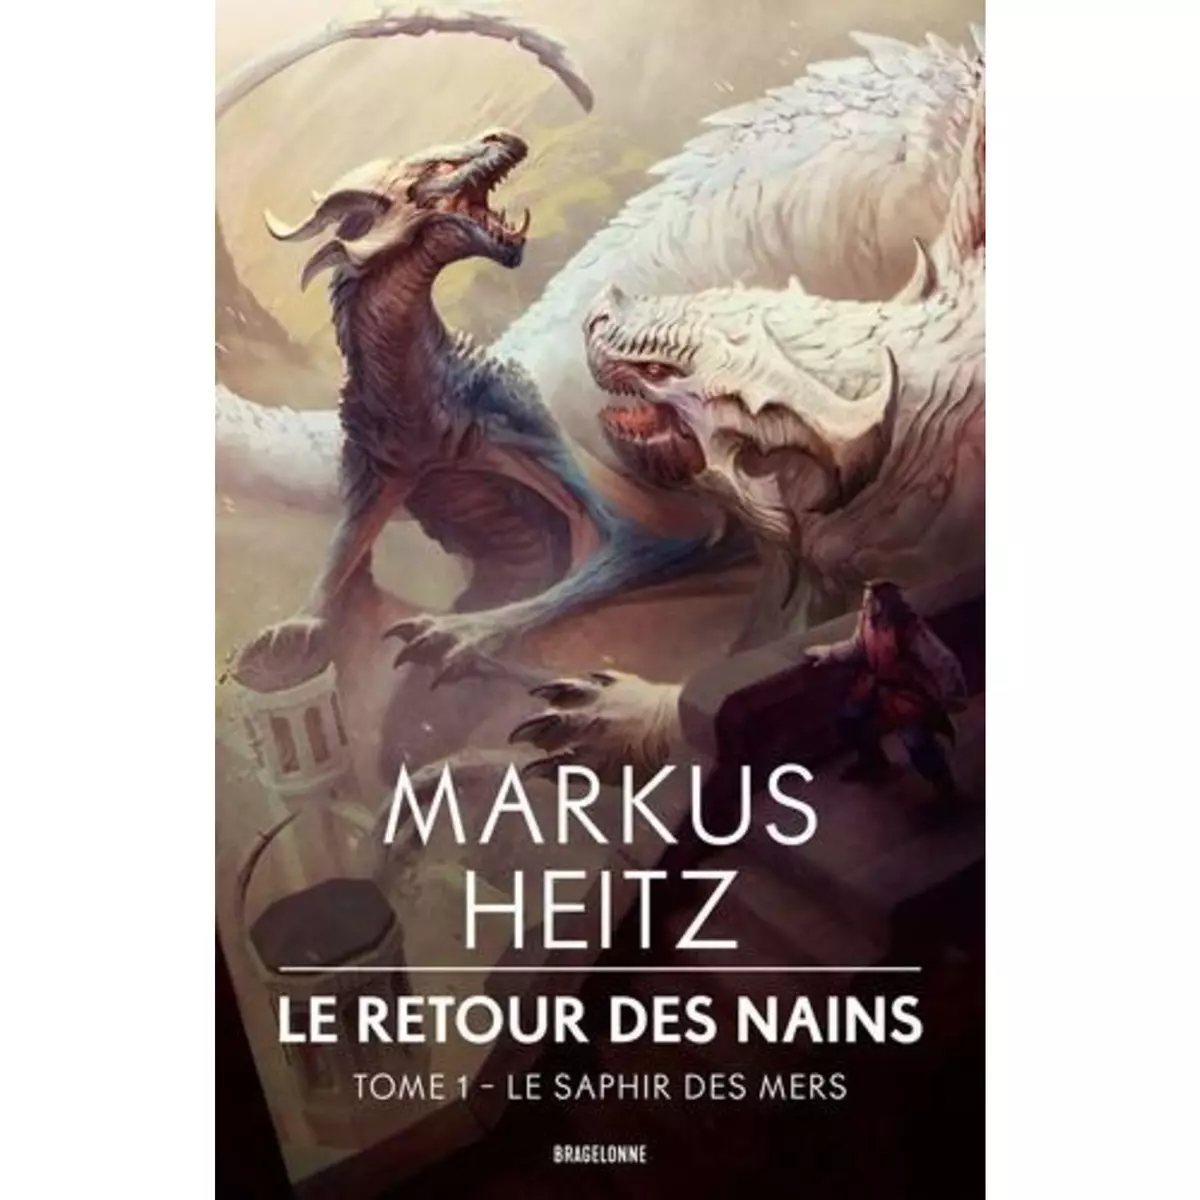  LE RETOUR DES NAINS TOME 1 : LE SAPHIR DES MERS, Heitz Markus